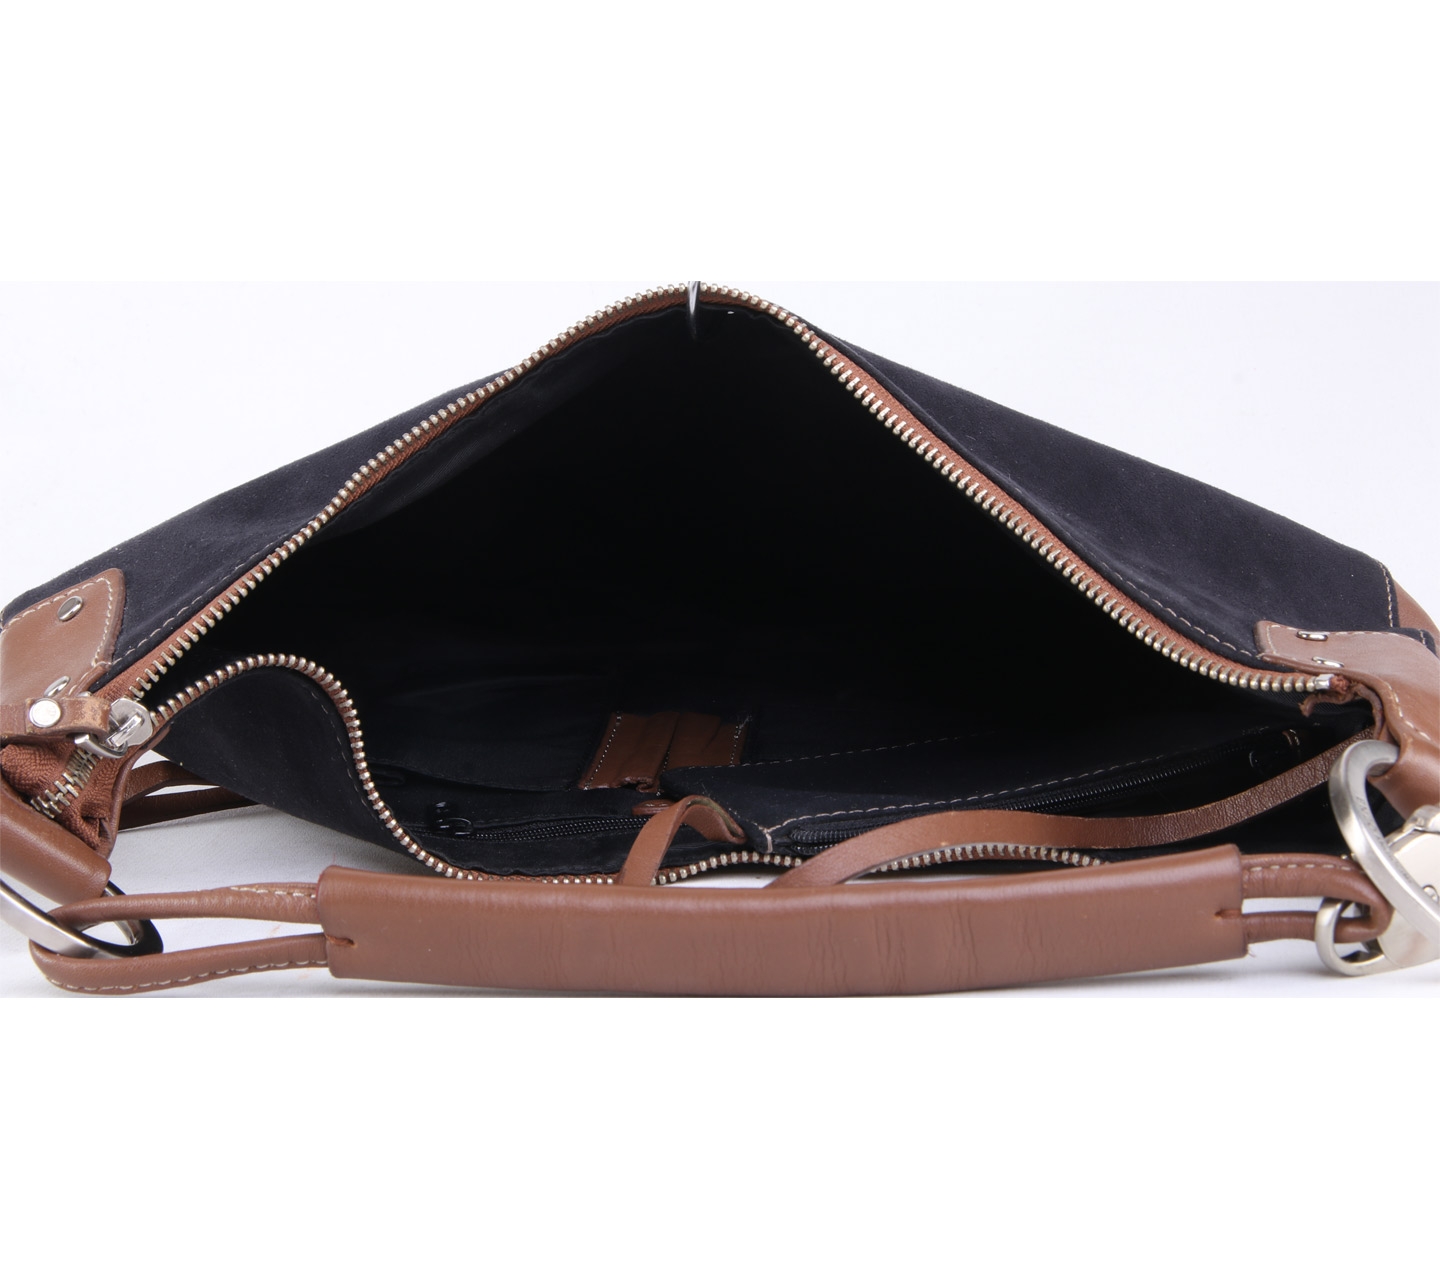 Enzo Angiolini Black And Brown Handbag